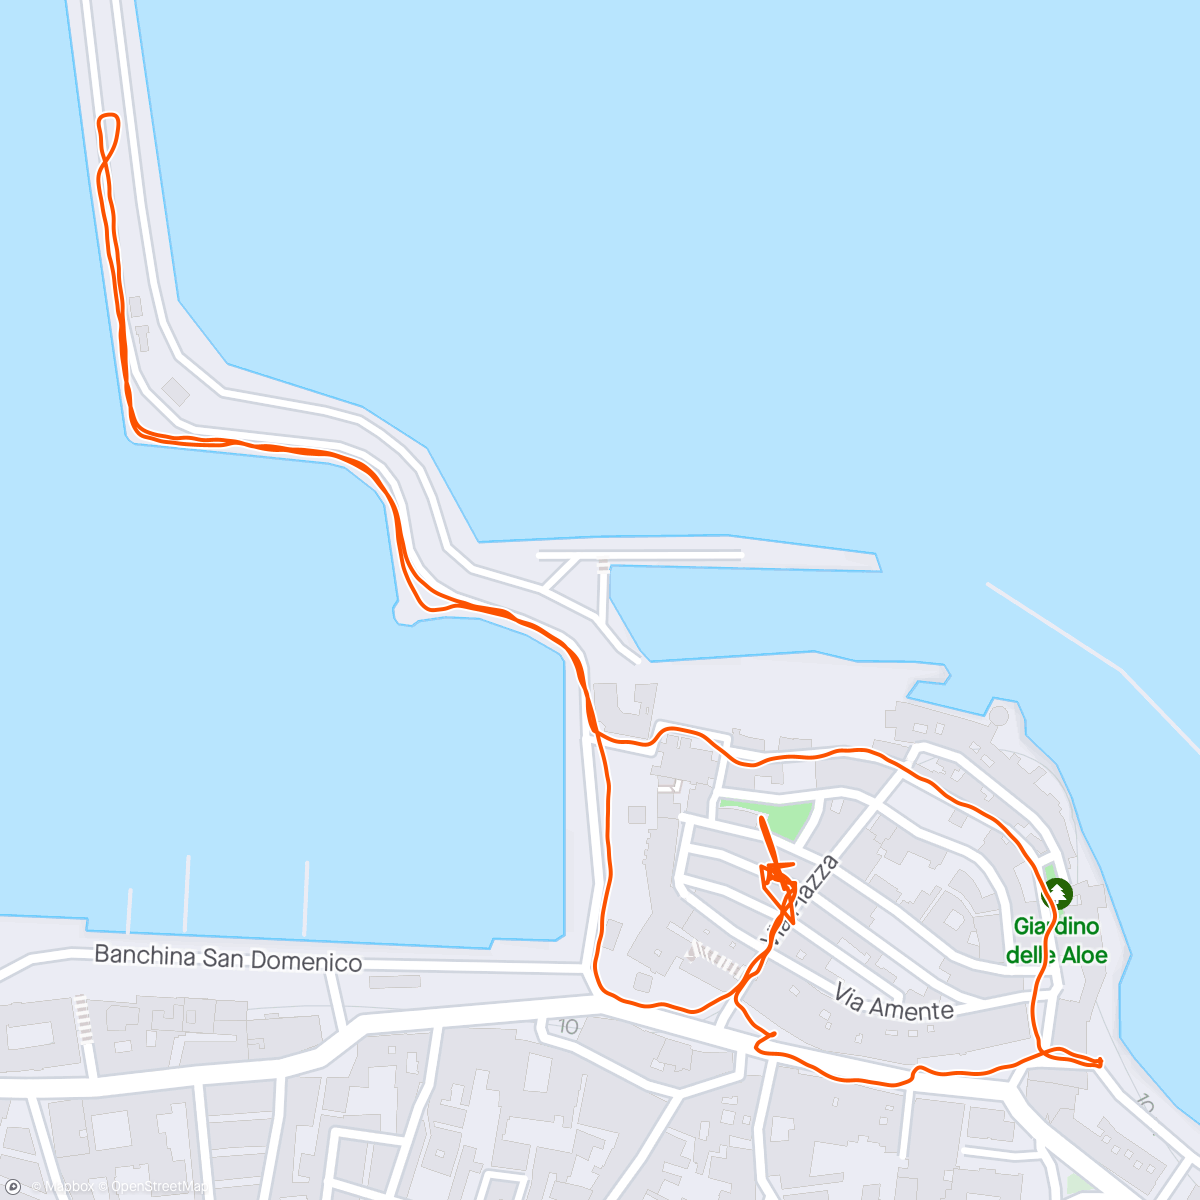 Mapa da atividade, Camminata mattutina